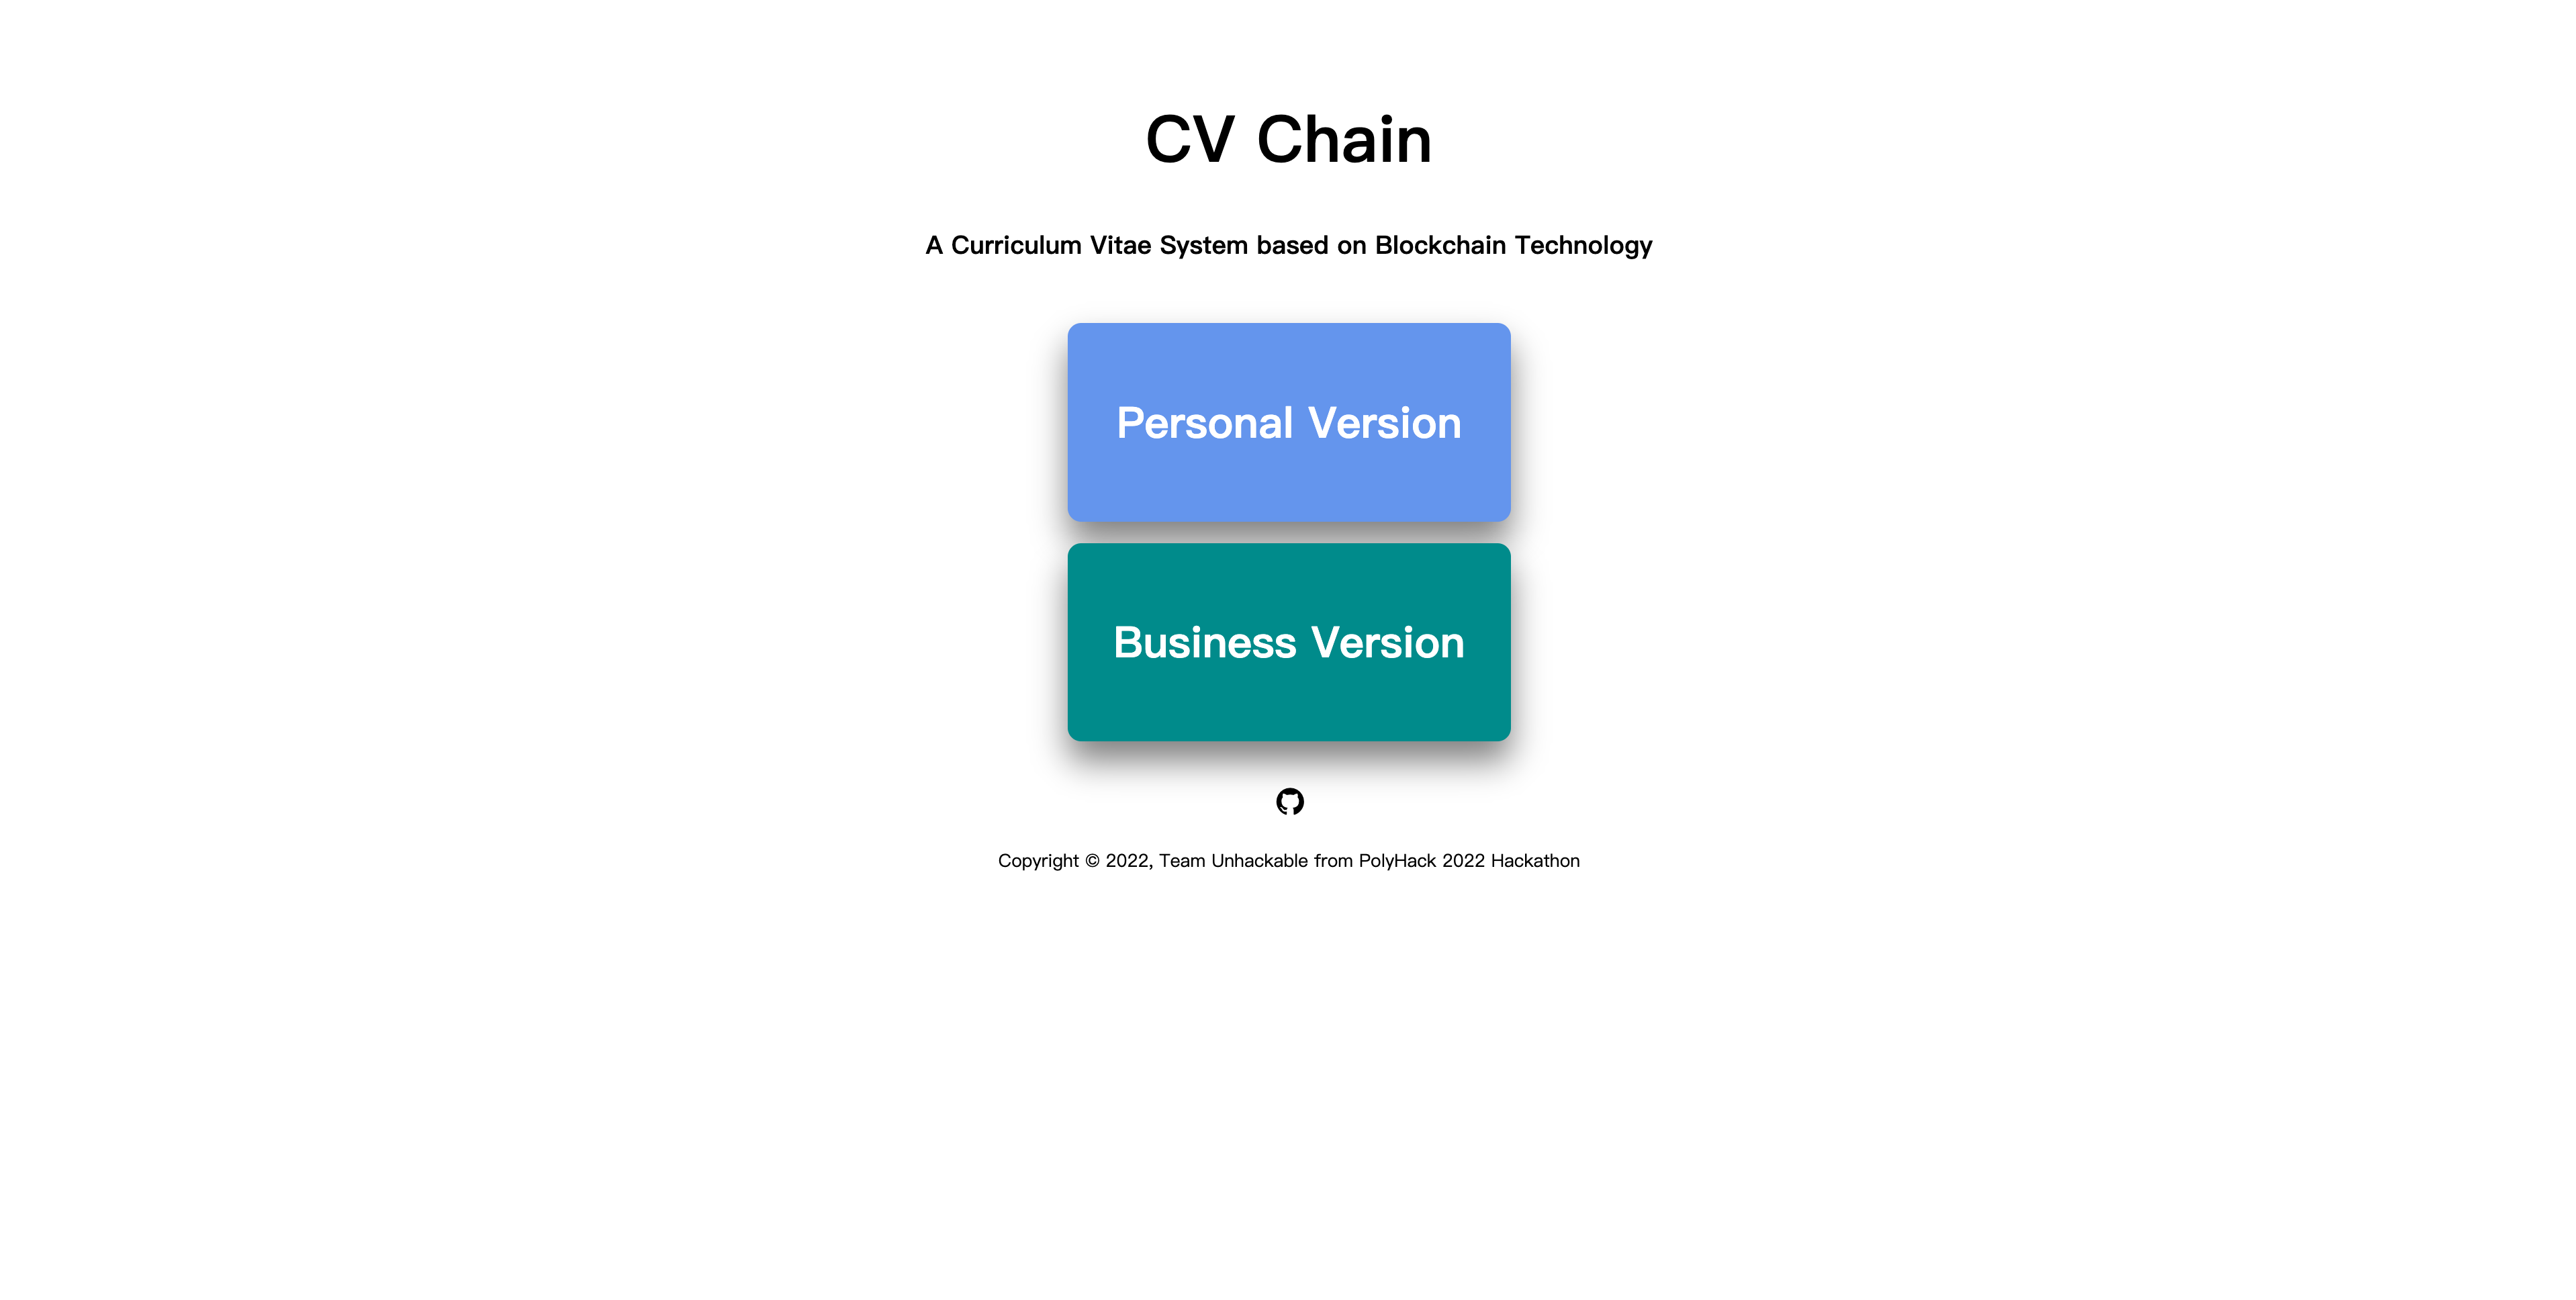 CV Chain